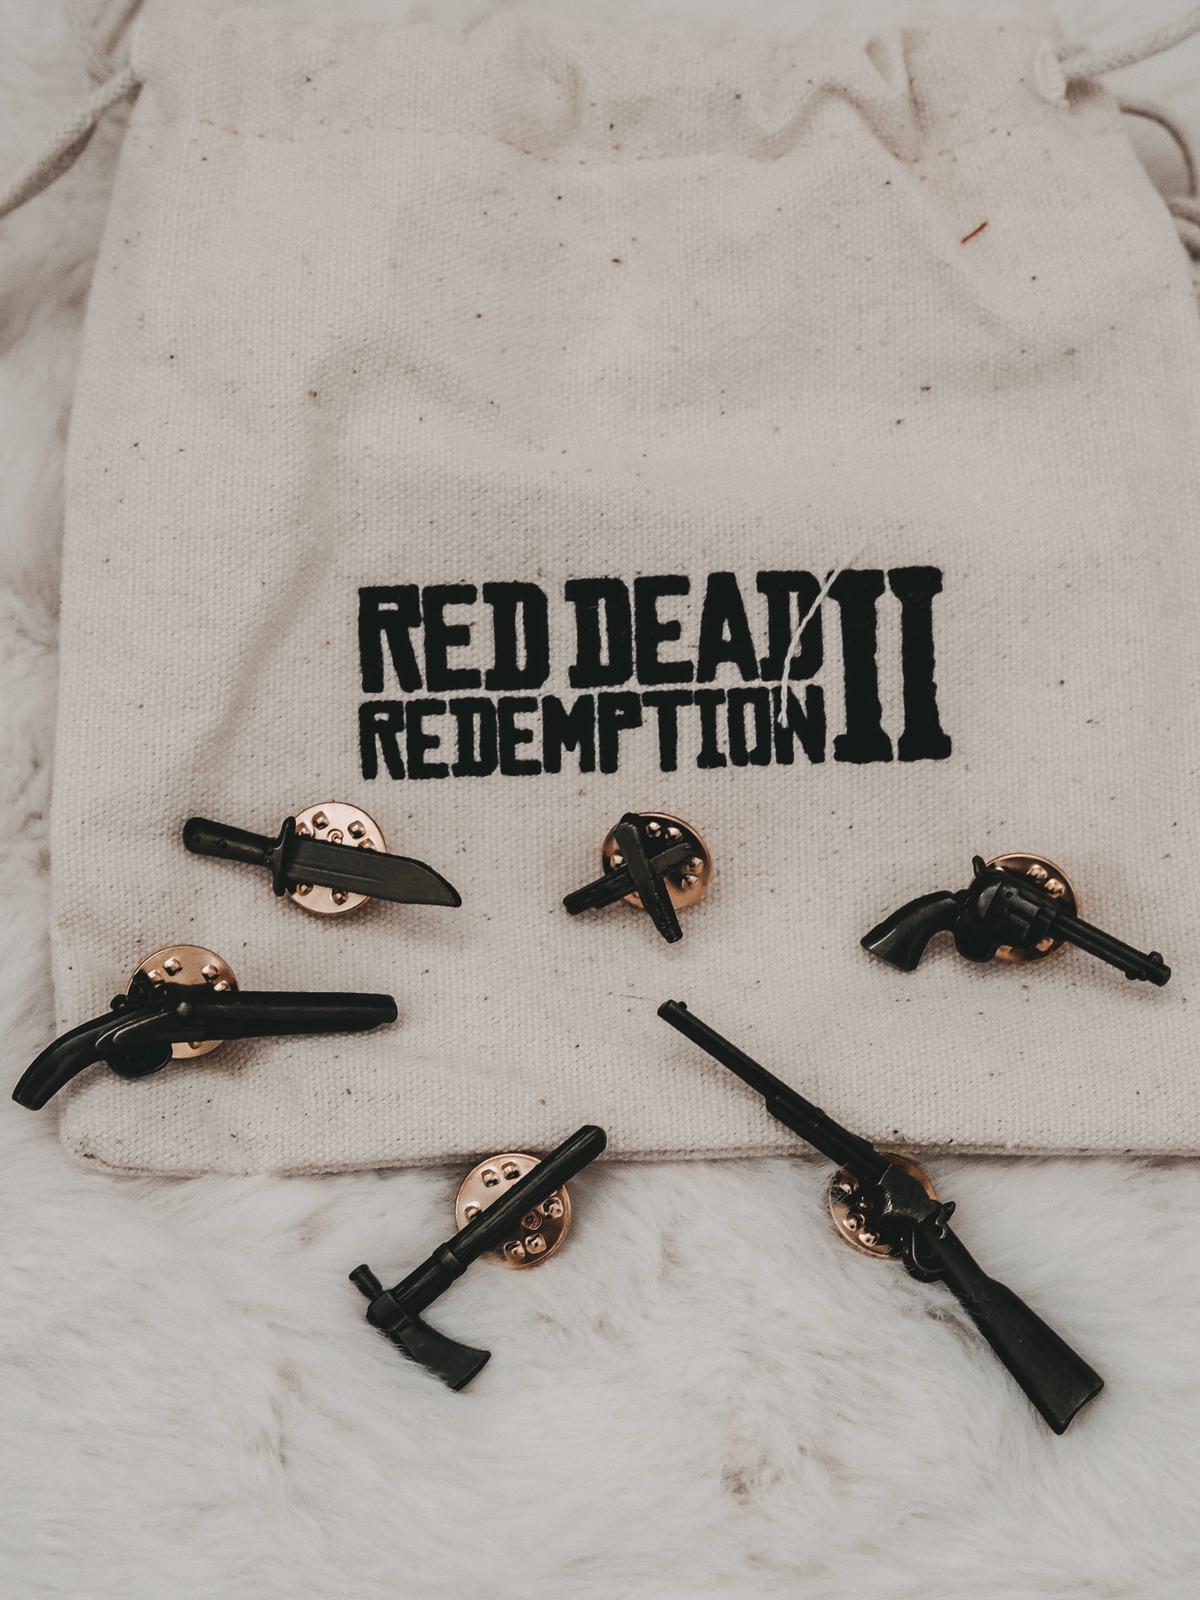 Red Dead Redemption 2 Collectors Box Unboxing heute auf dem Gaming Blog. Die tolle limitierte Collectors Edition von RDR2 ist ein Muss für jeden Gaming Fan!